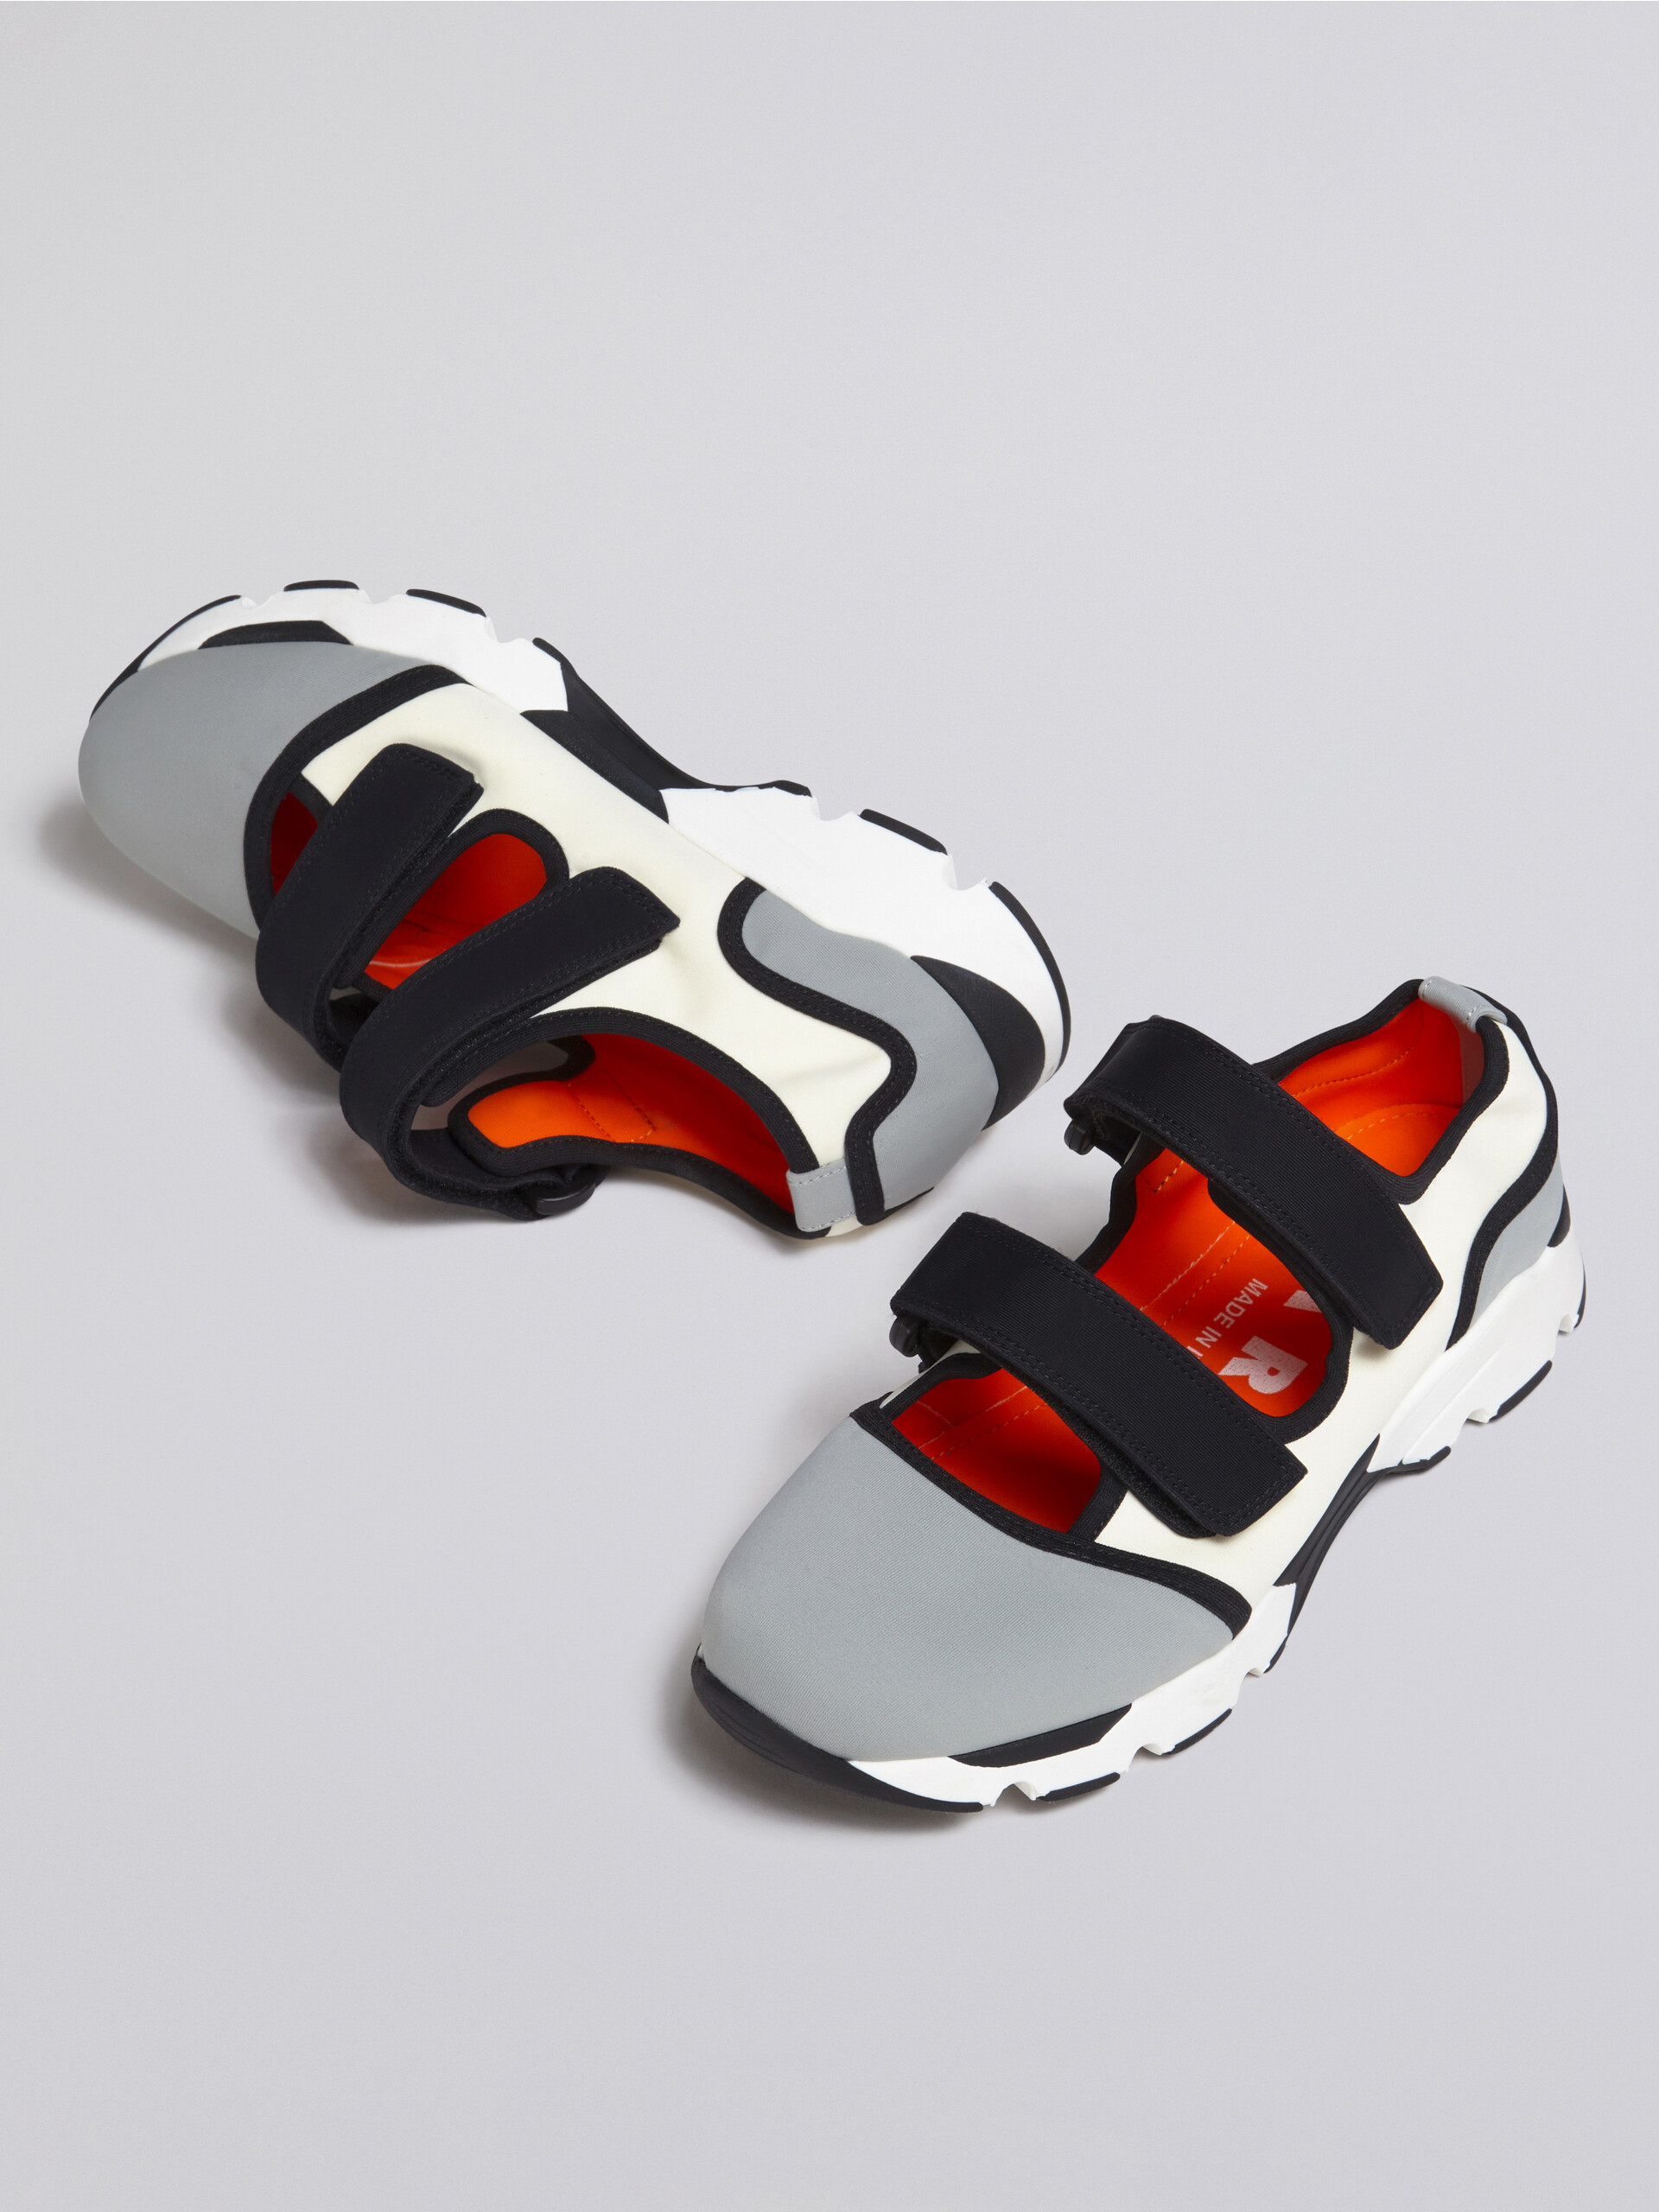 Sneaker in tessuto tecnico con chiusure a strappo grigio e bianco - Sneakers - Image 5